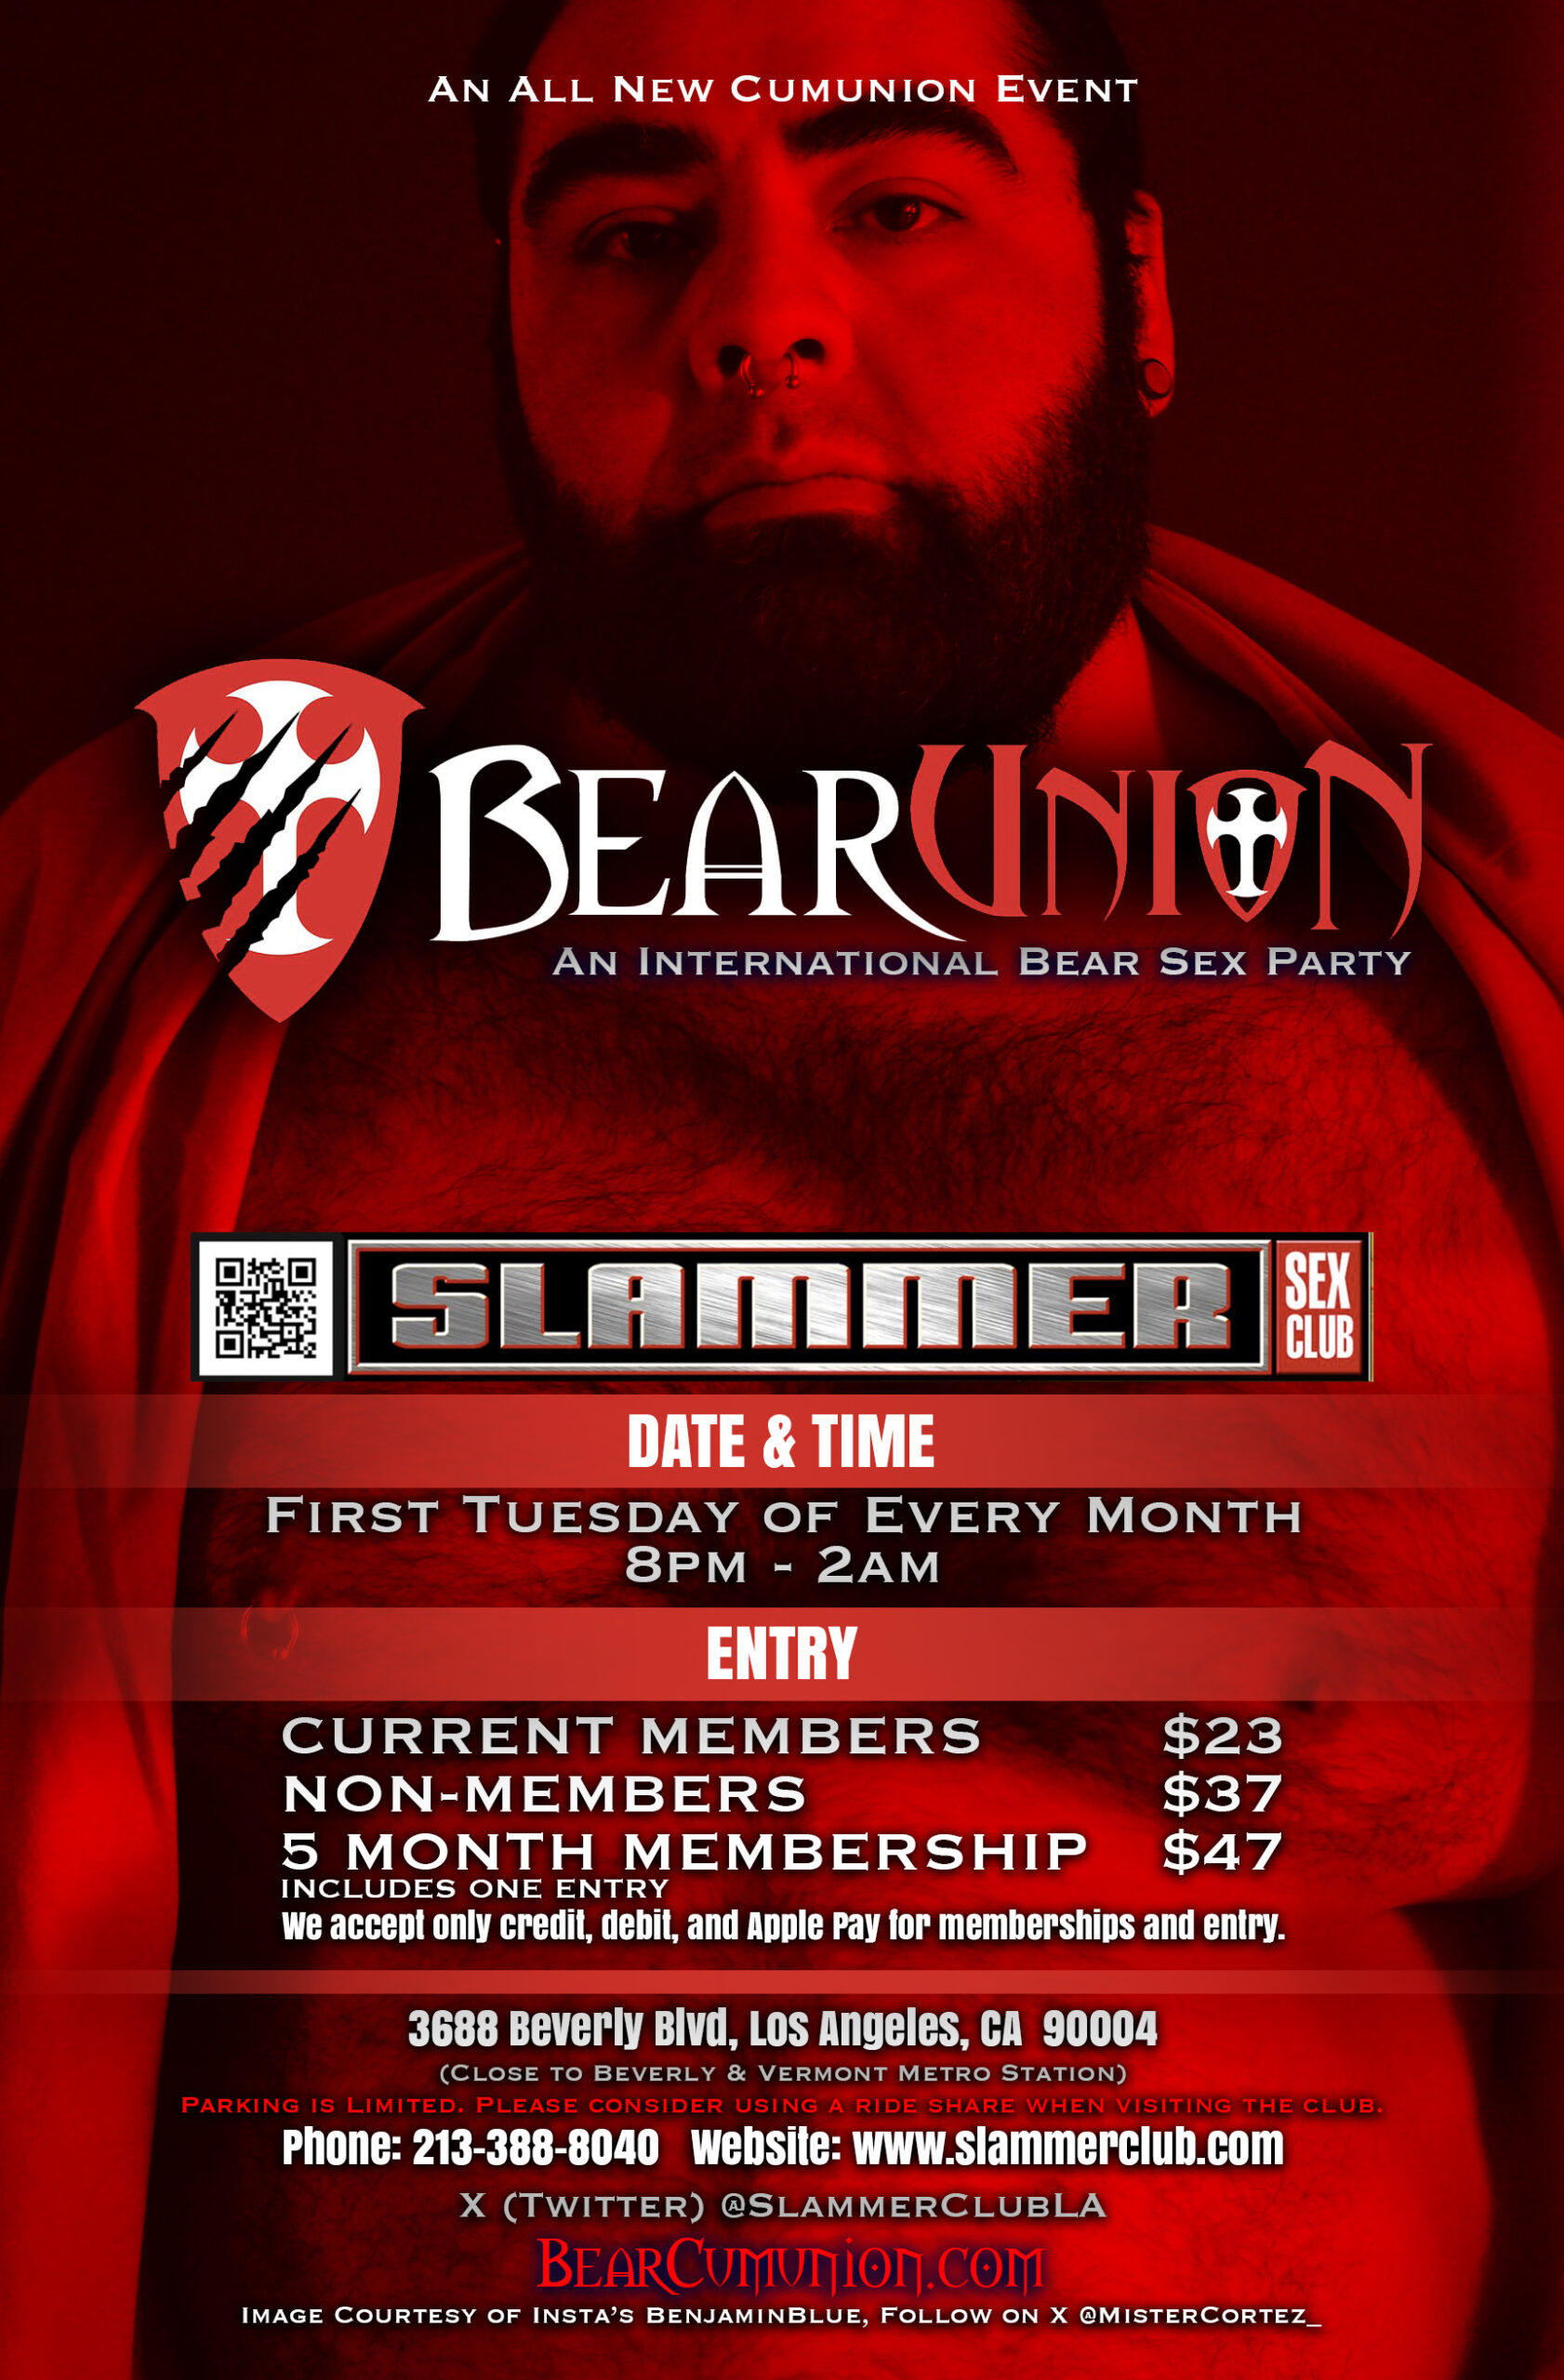 Slammer Club presents Bear Nights.